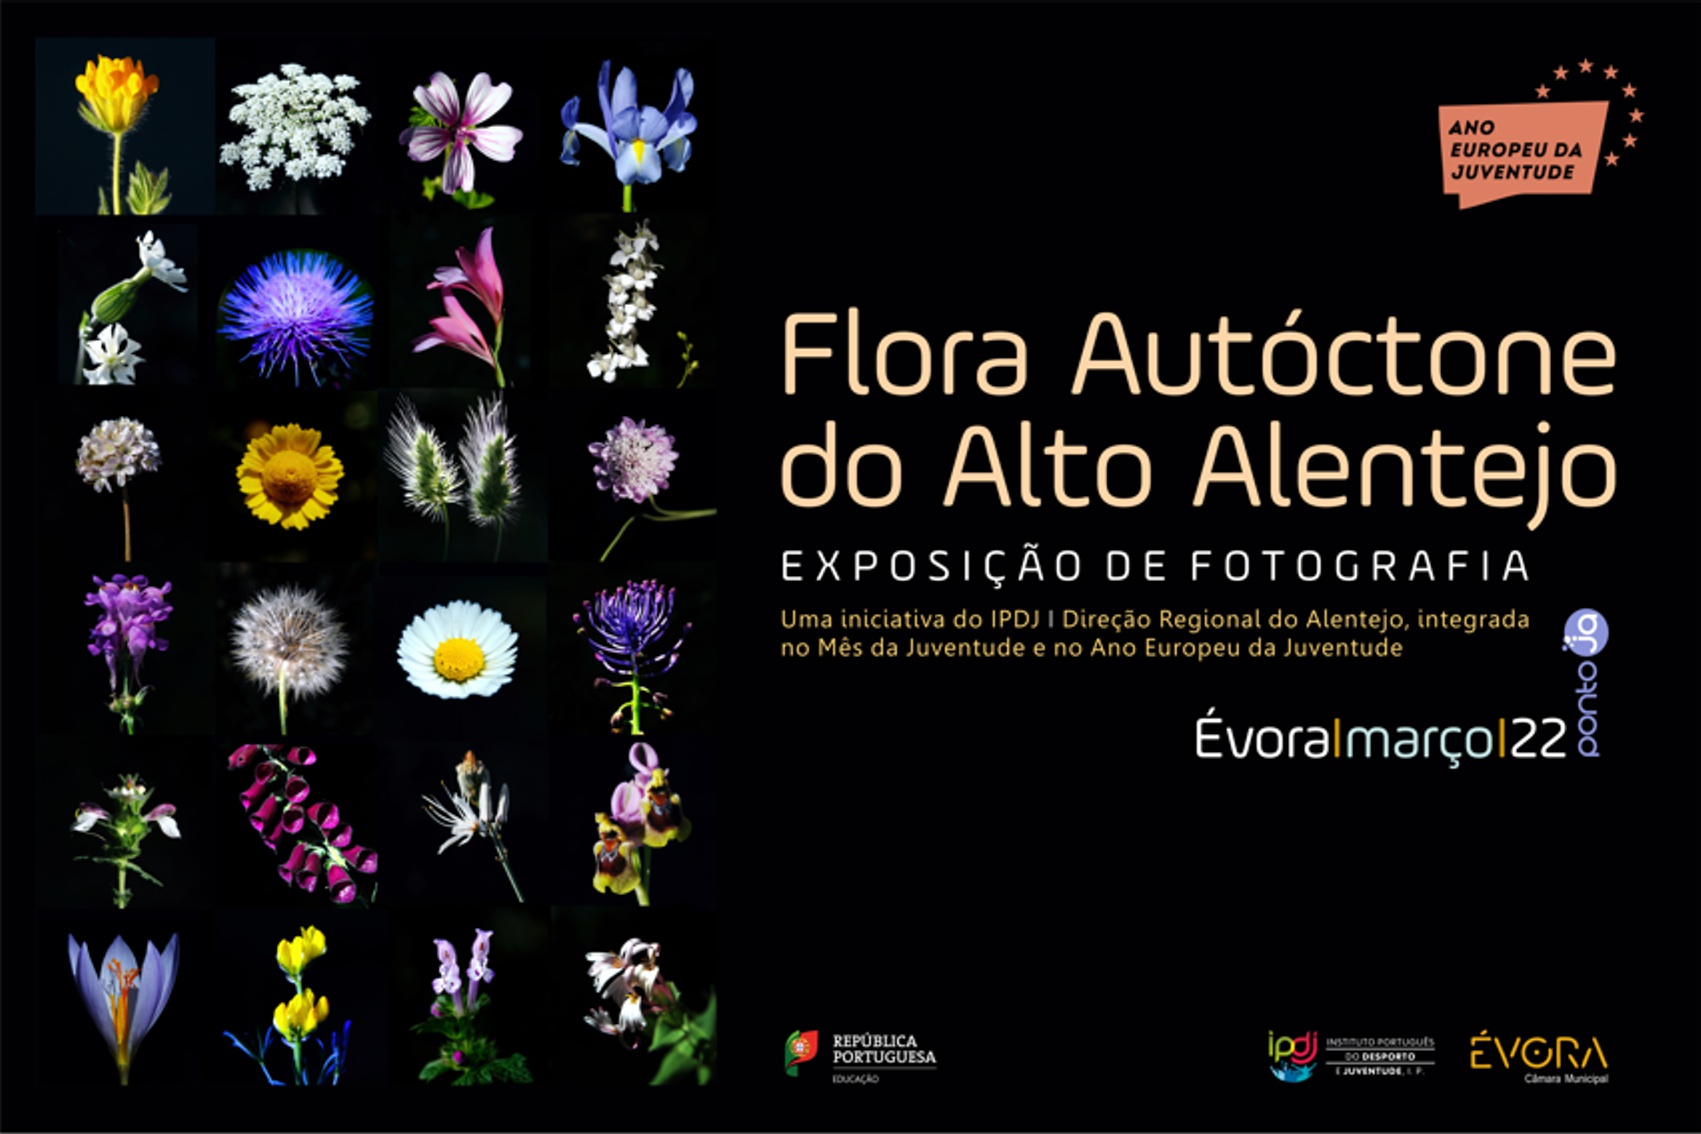 Imagem com fundo preto e diversas plantas, muito coloridas, que fazem parte da exposição.